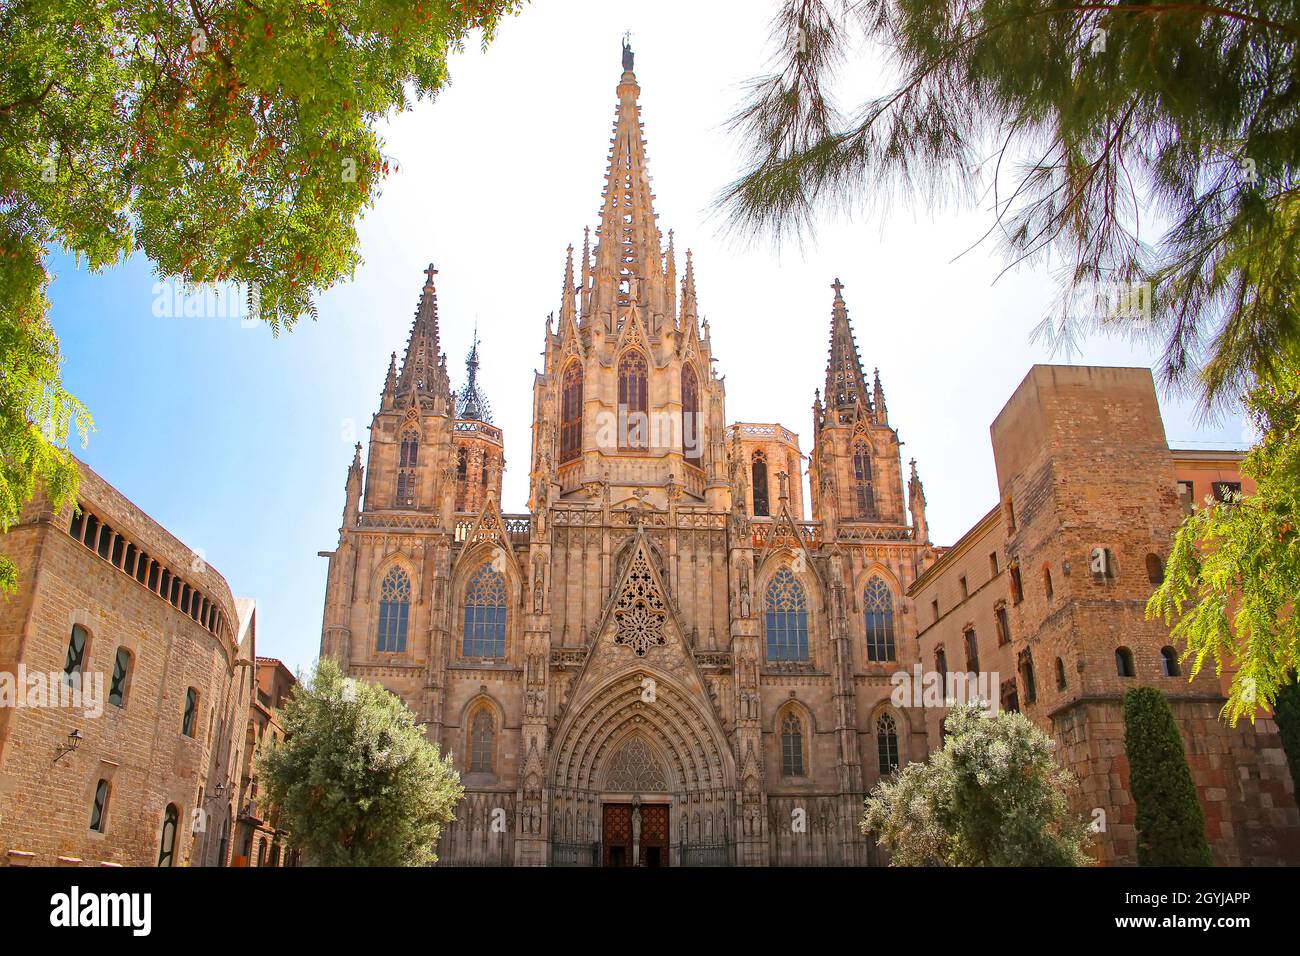 La Cattedrale di Barcellona, conosciuta anche come la Seu, e la Cattedrale della Santa Croce e di Sant'Eulalia, risale al 11th secolo, Barcellona, Spagna. Foto Stock